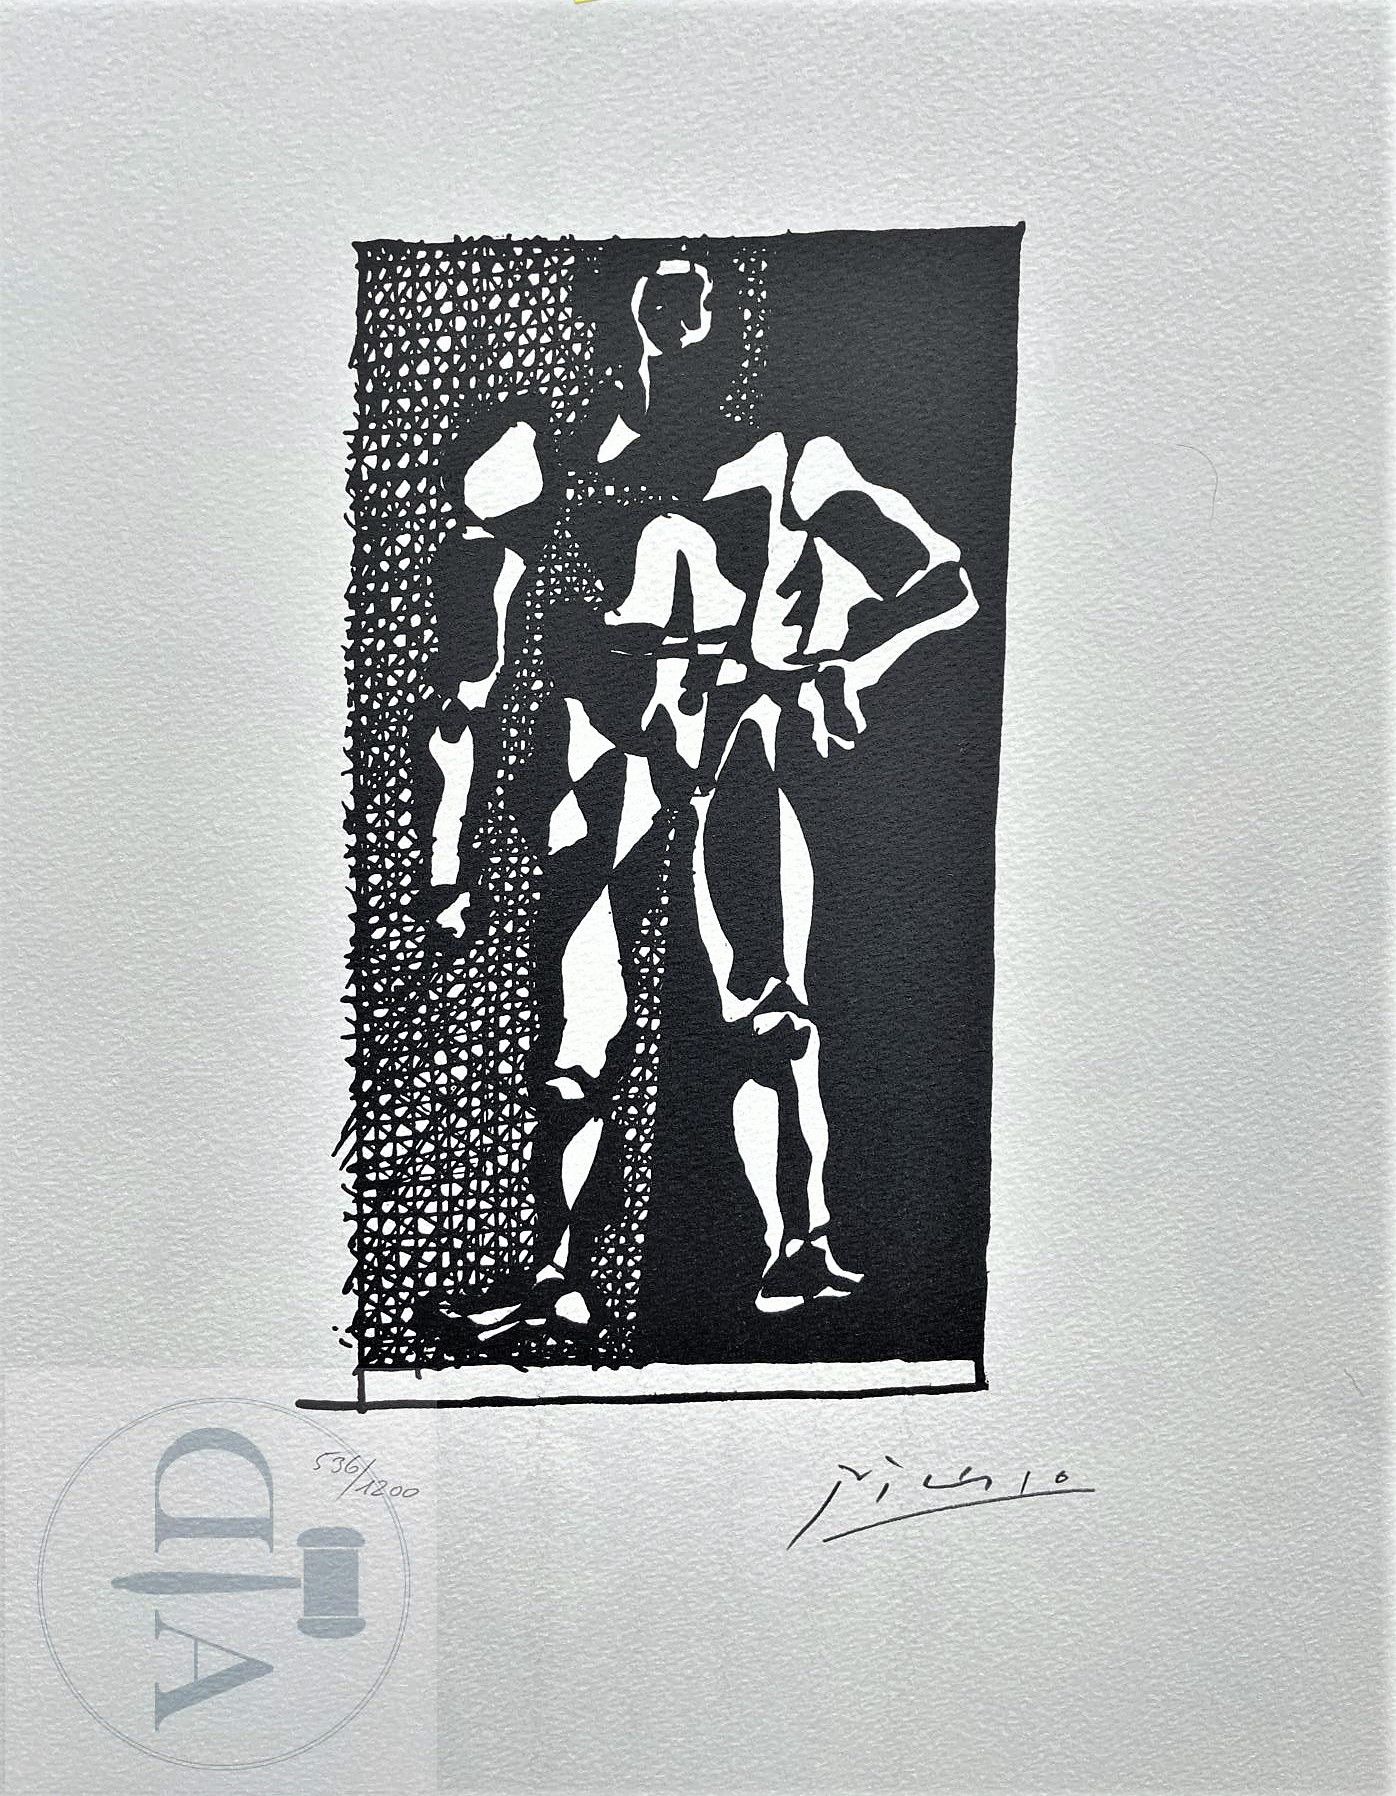 Null 毕加索/石版画 "Hélène chez Archimède planche XXI "出版于1972年，编号1200 ex. 42 X 33厘米